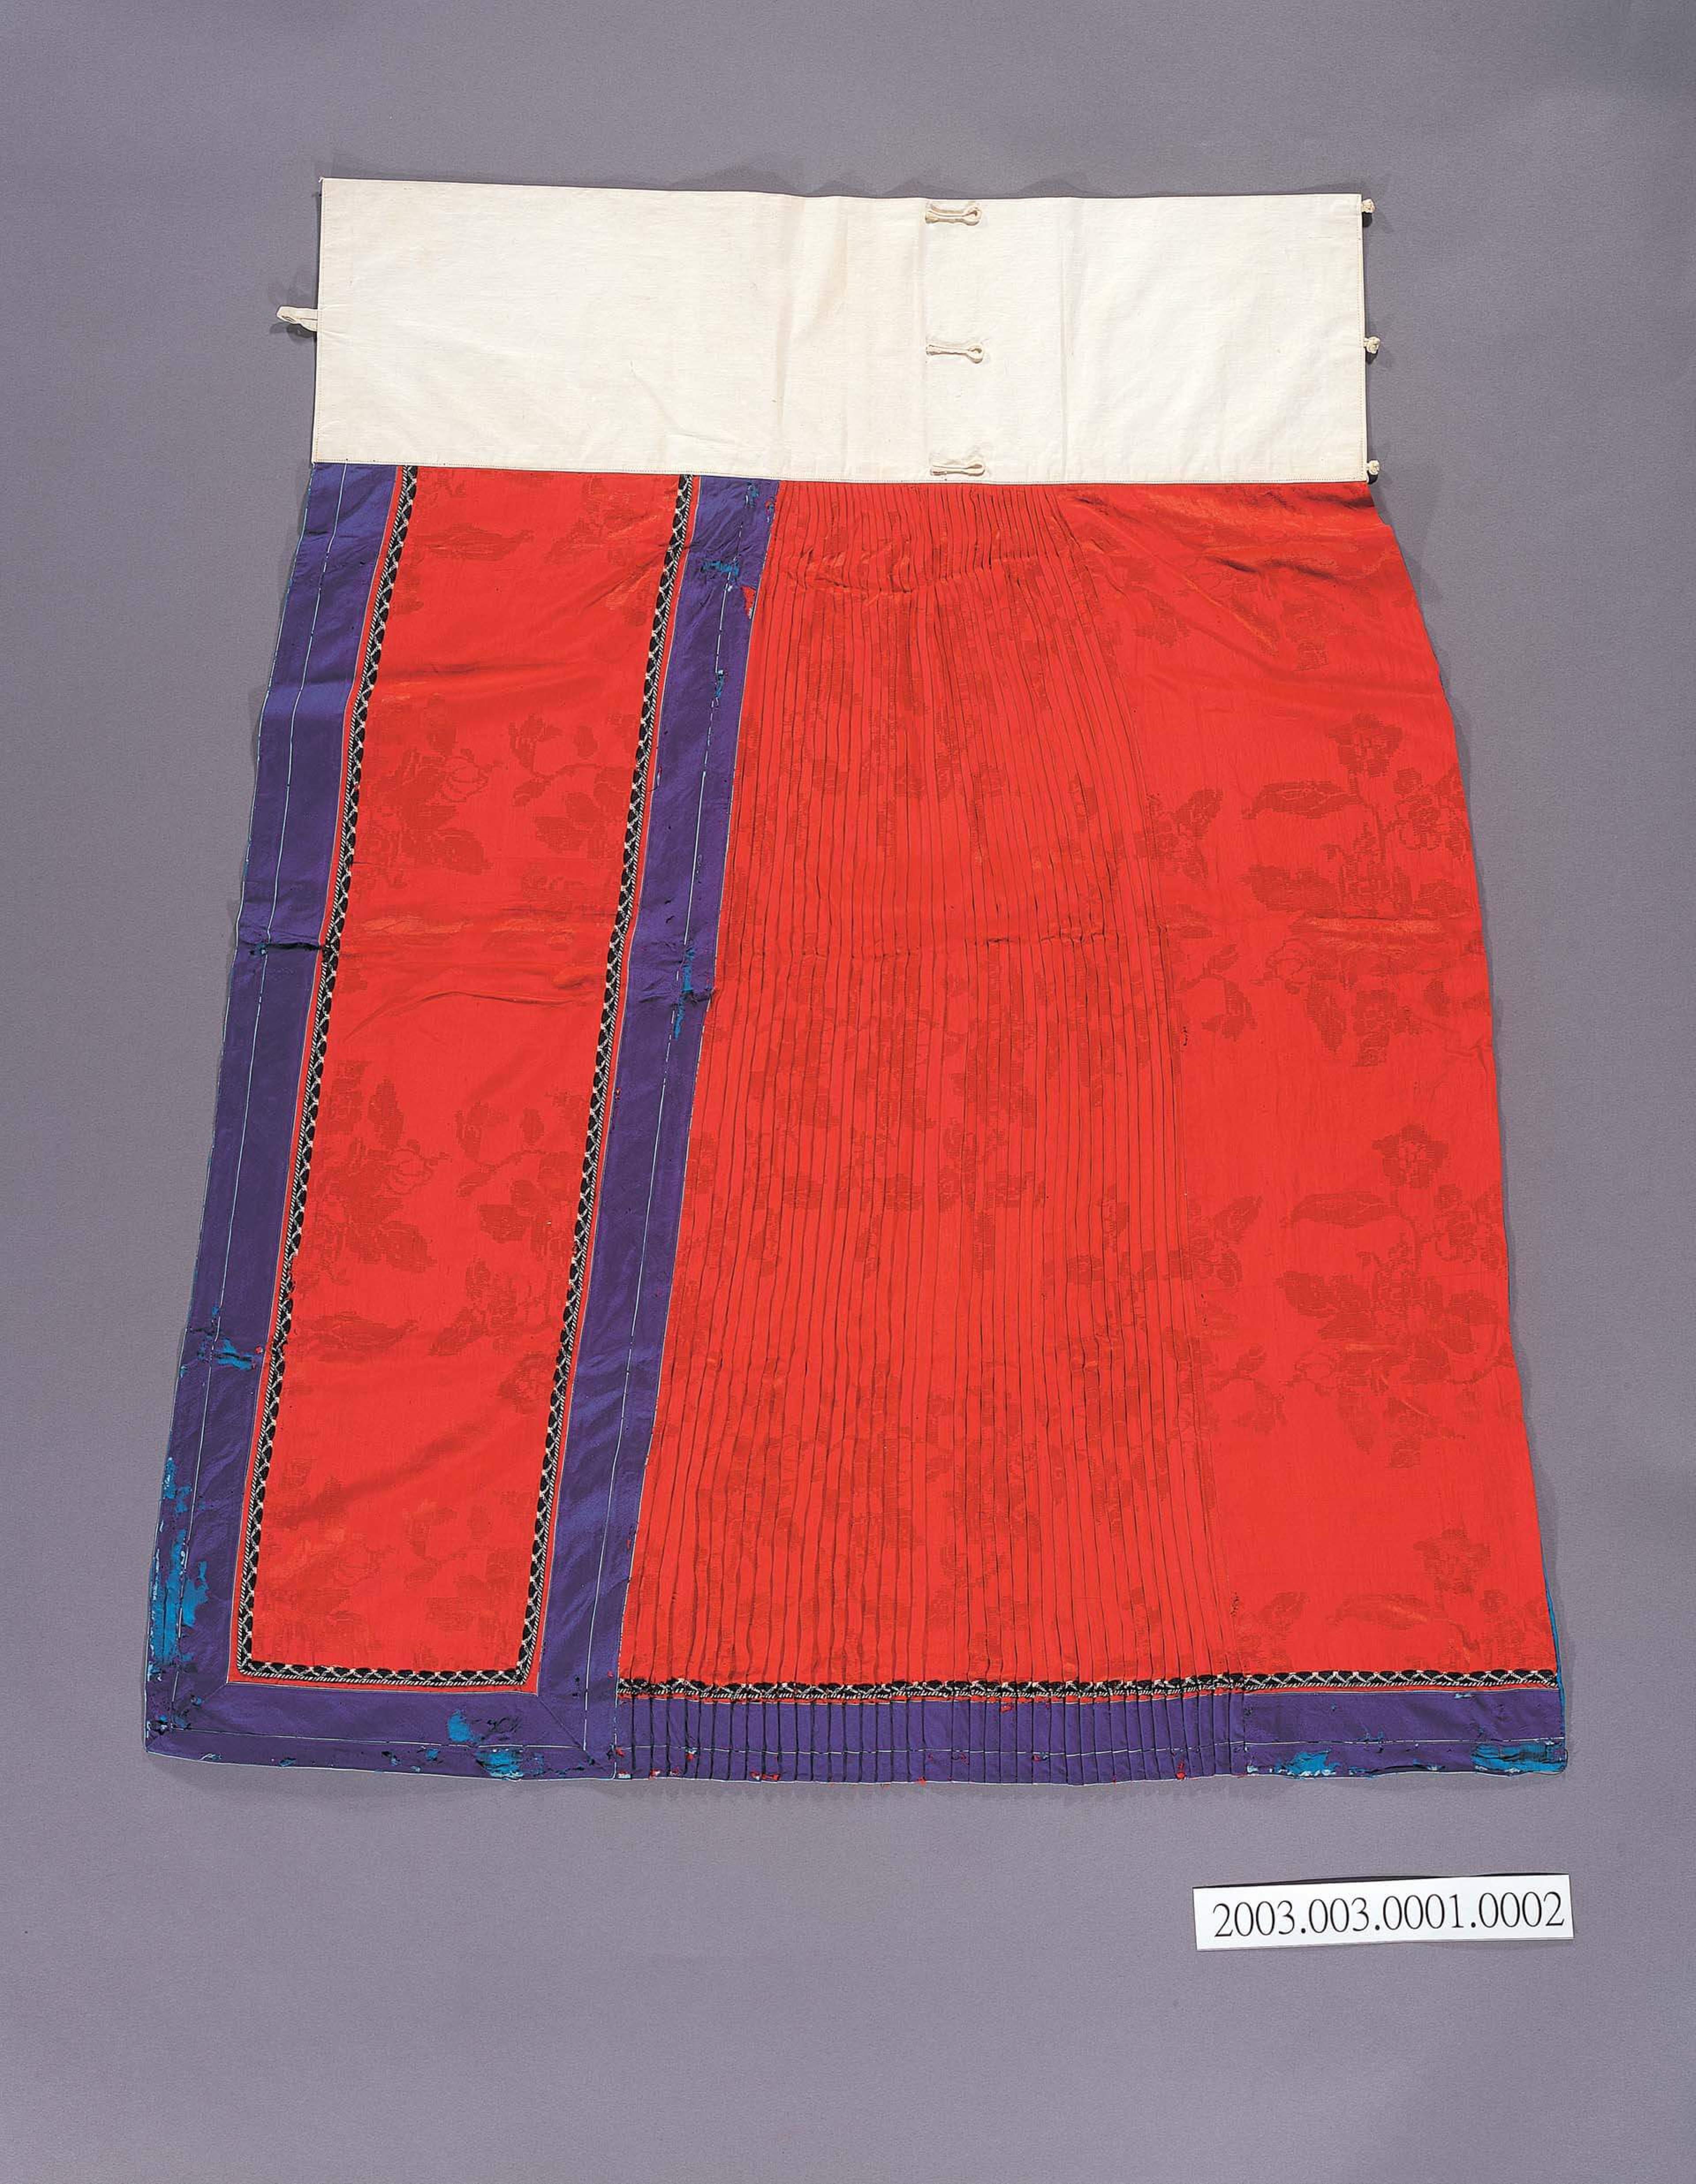 紅藍雙色絲質馬面裙 (共1張)